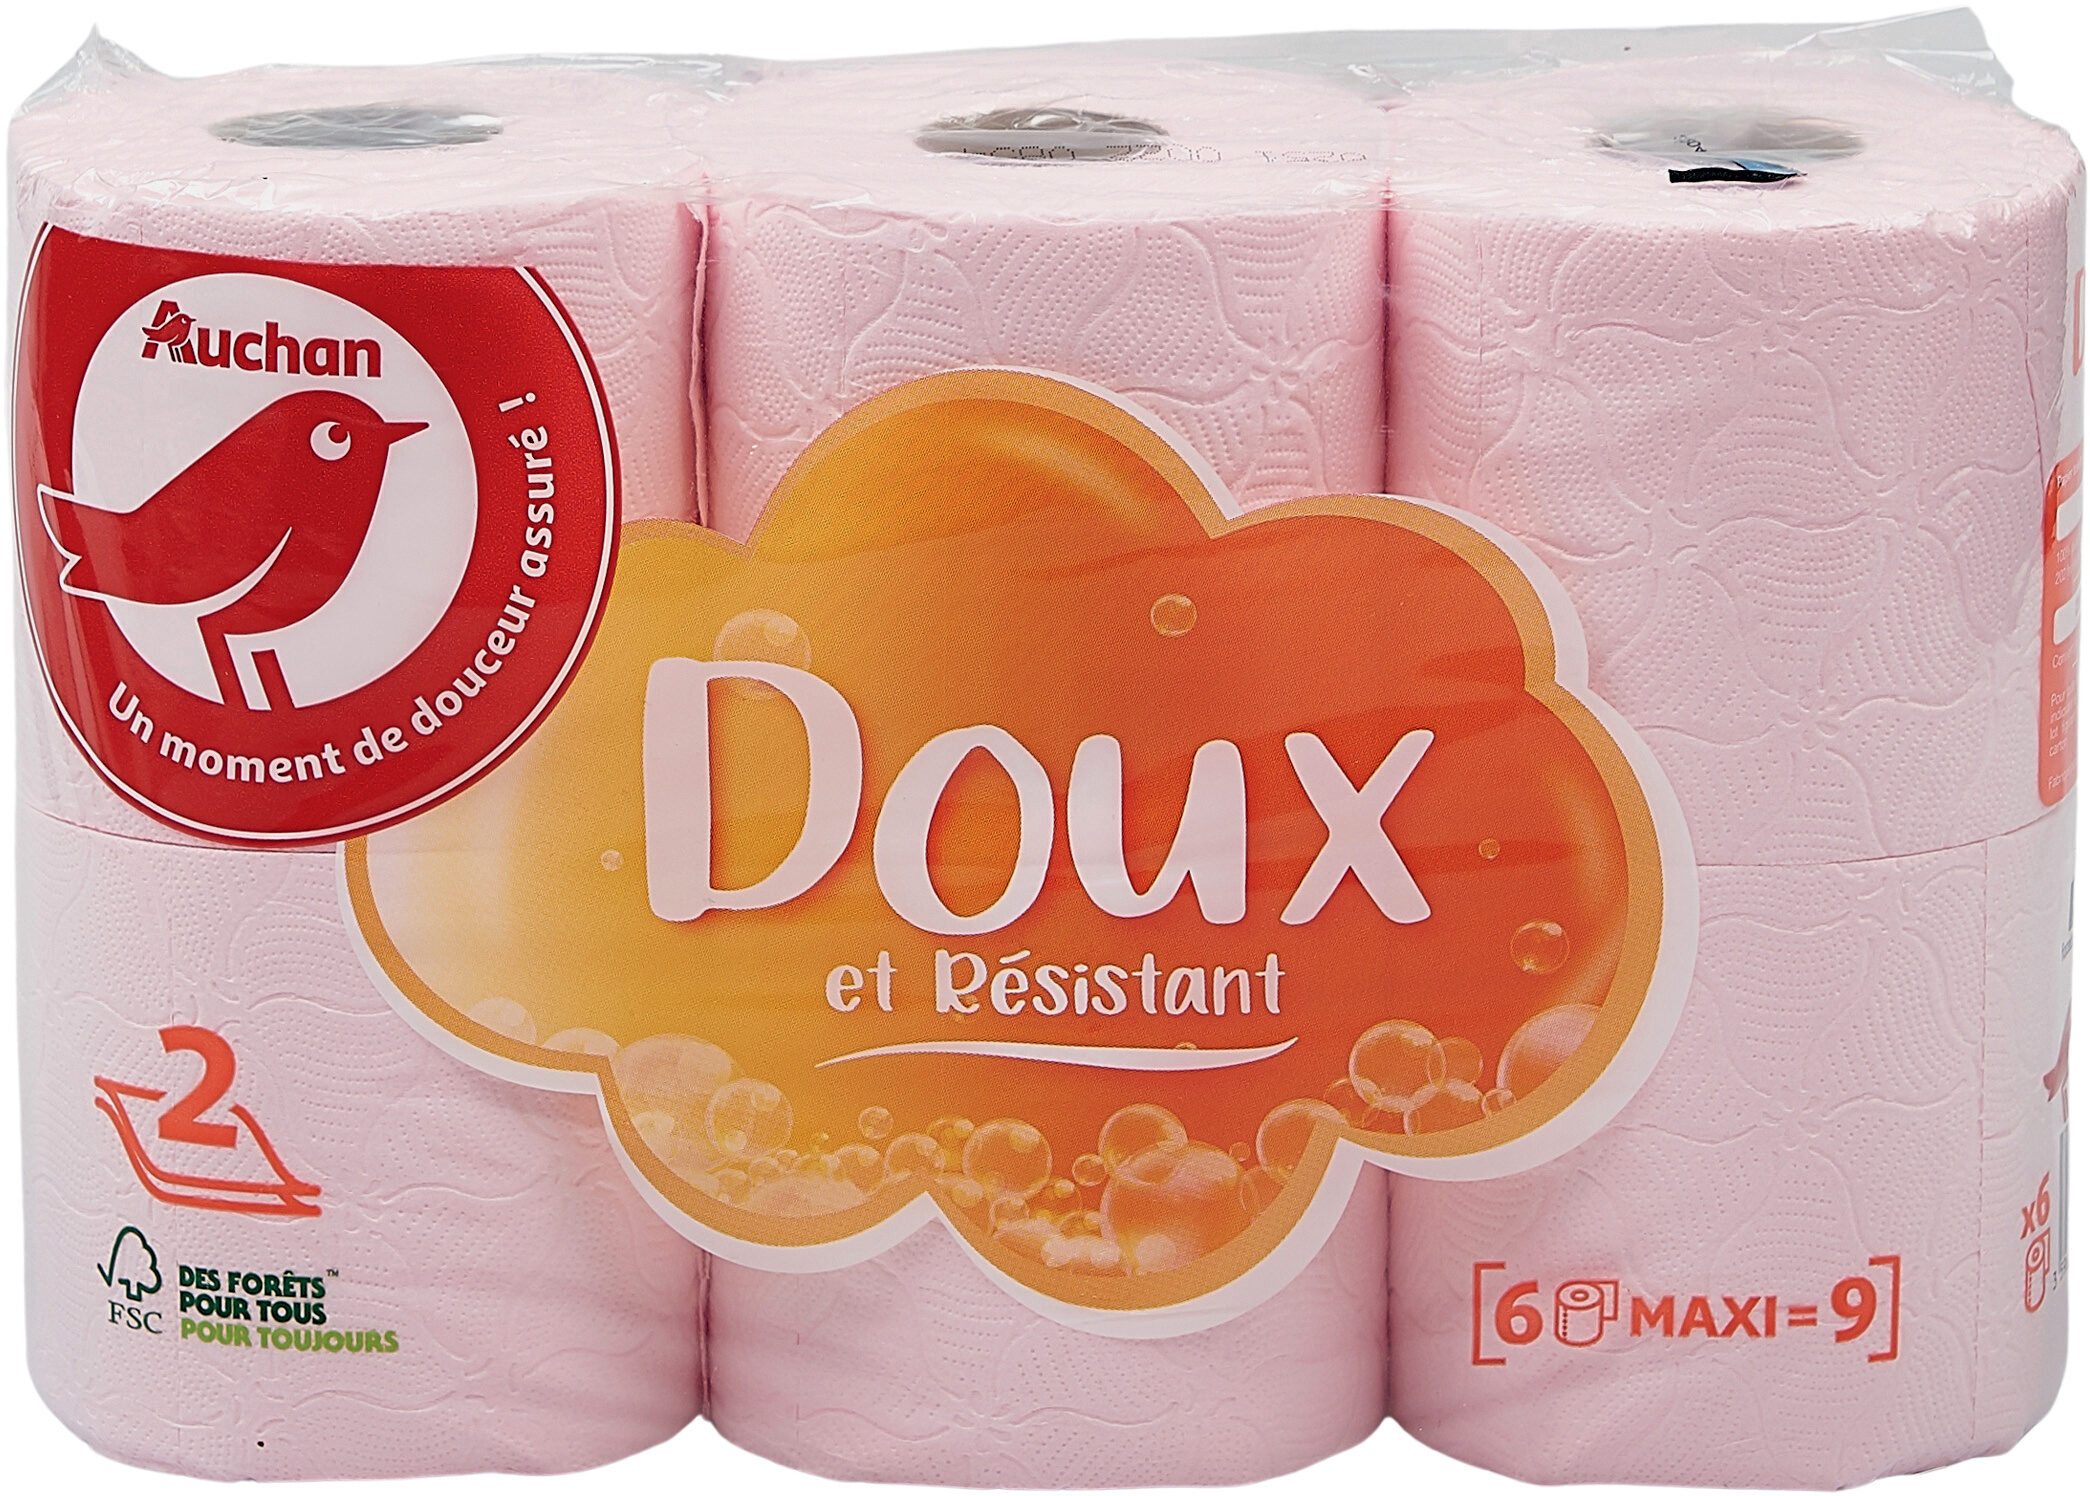 Papier toilette, Rose, 2 plis, Maxi - Produit - fr